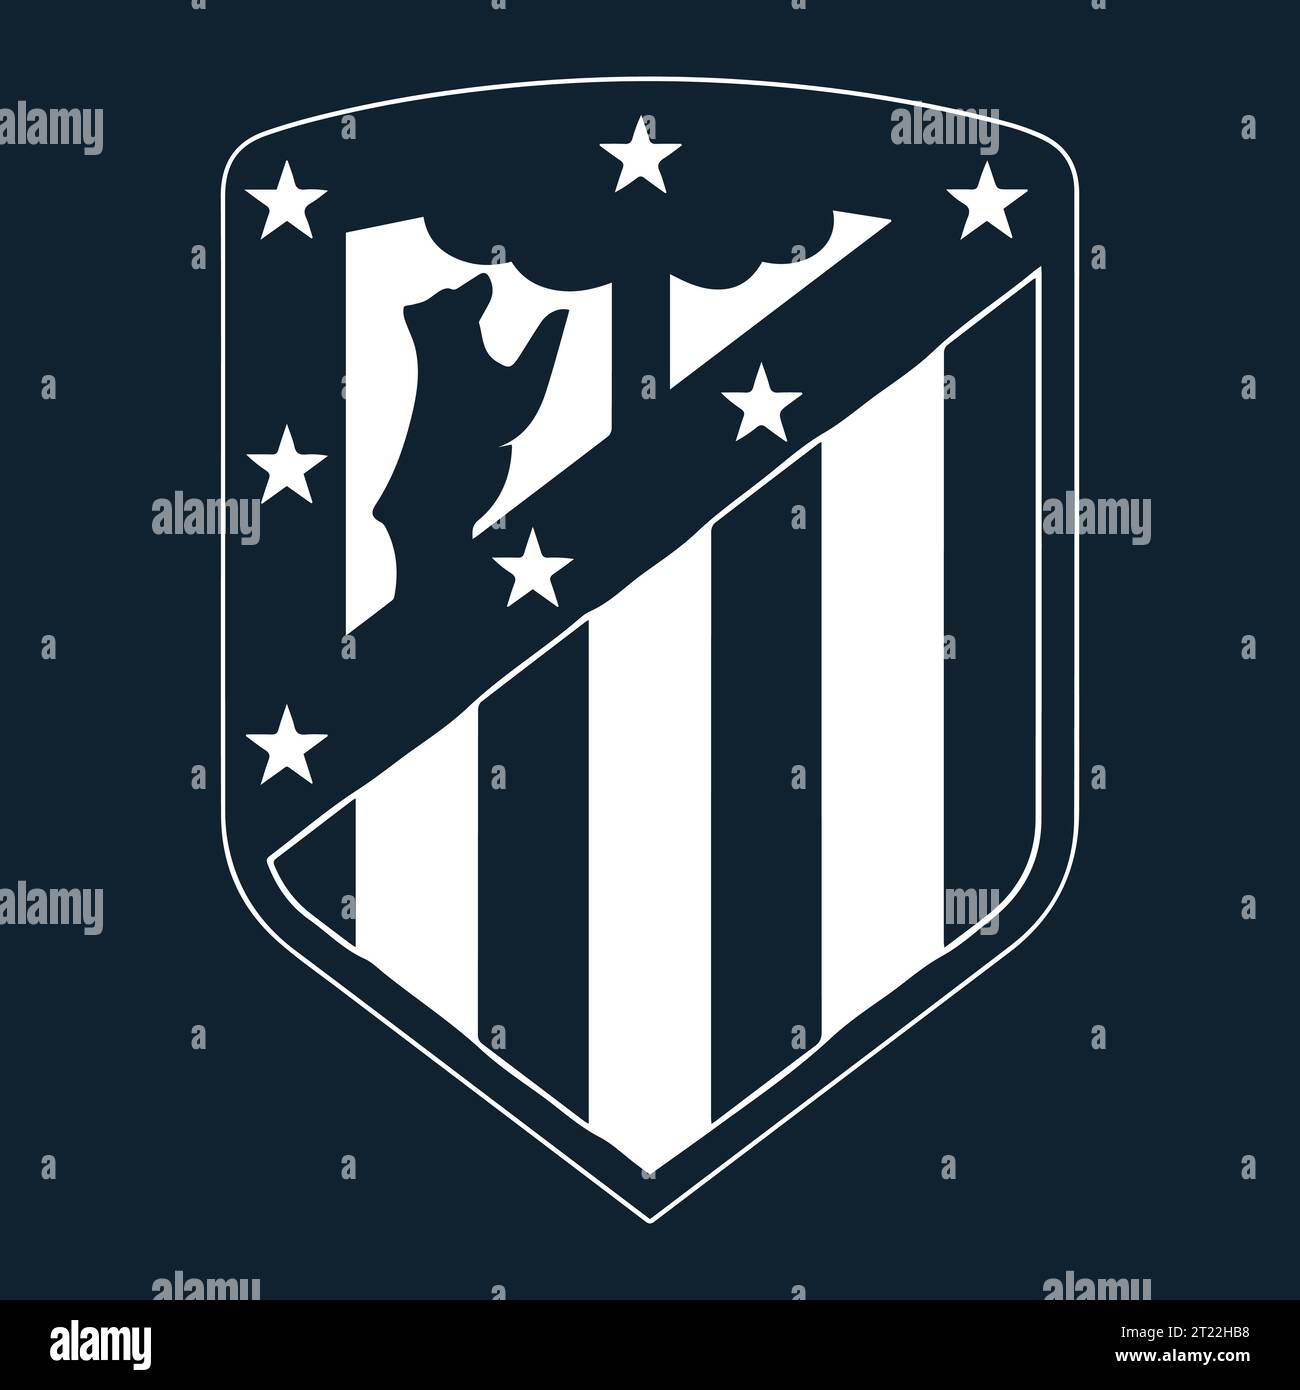 Atletico Madrid Weißes Logo spanischer professioneller Fußballverein, Vektor-Illustration abstraktes Blau bearbeitbares Hintergrundbild Stock Vektor